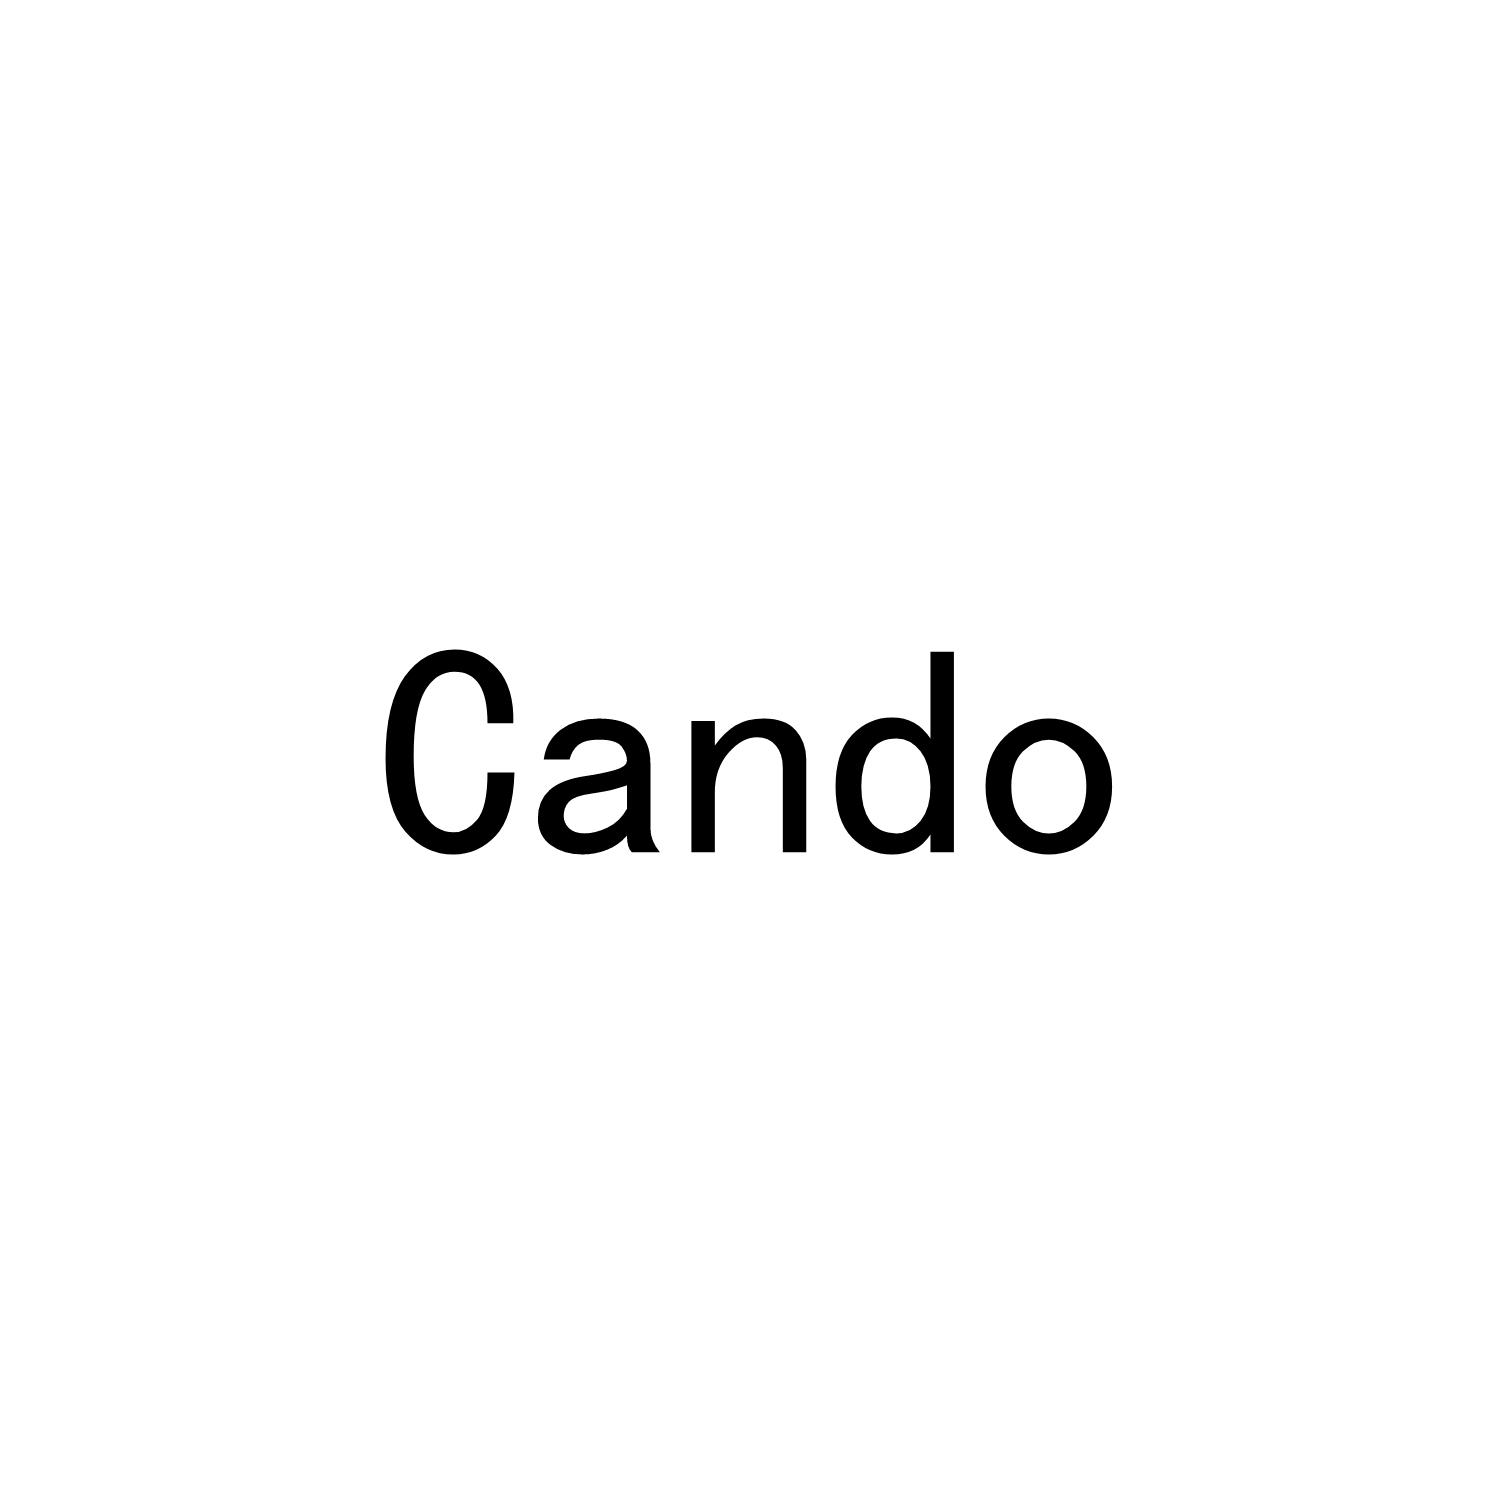 CANDO